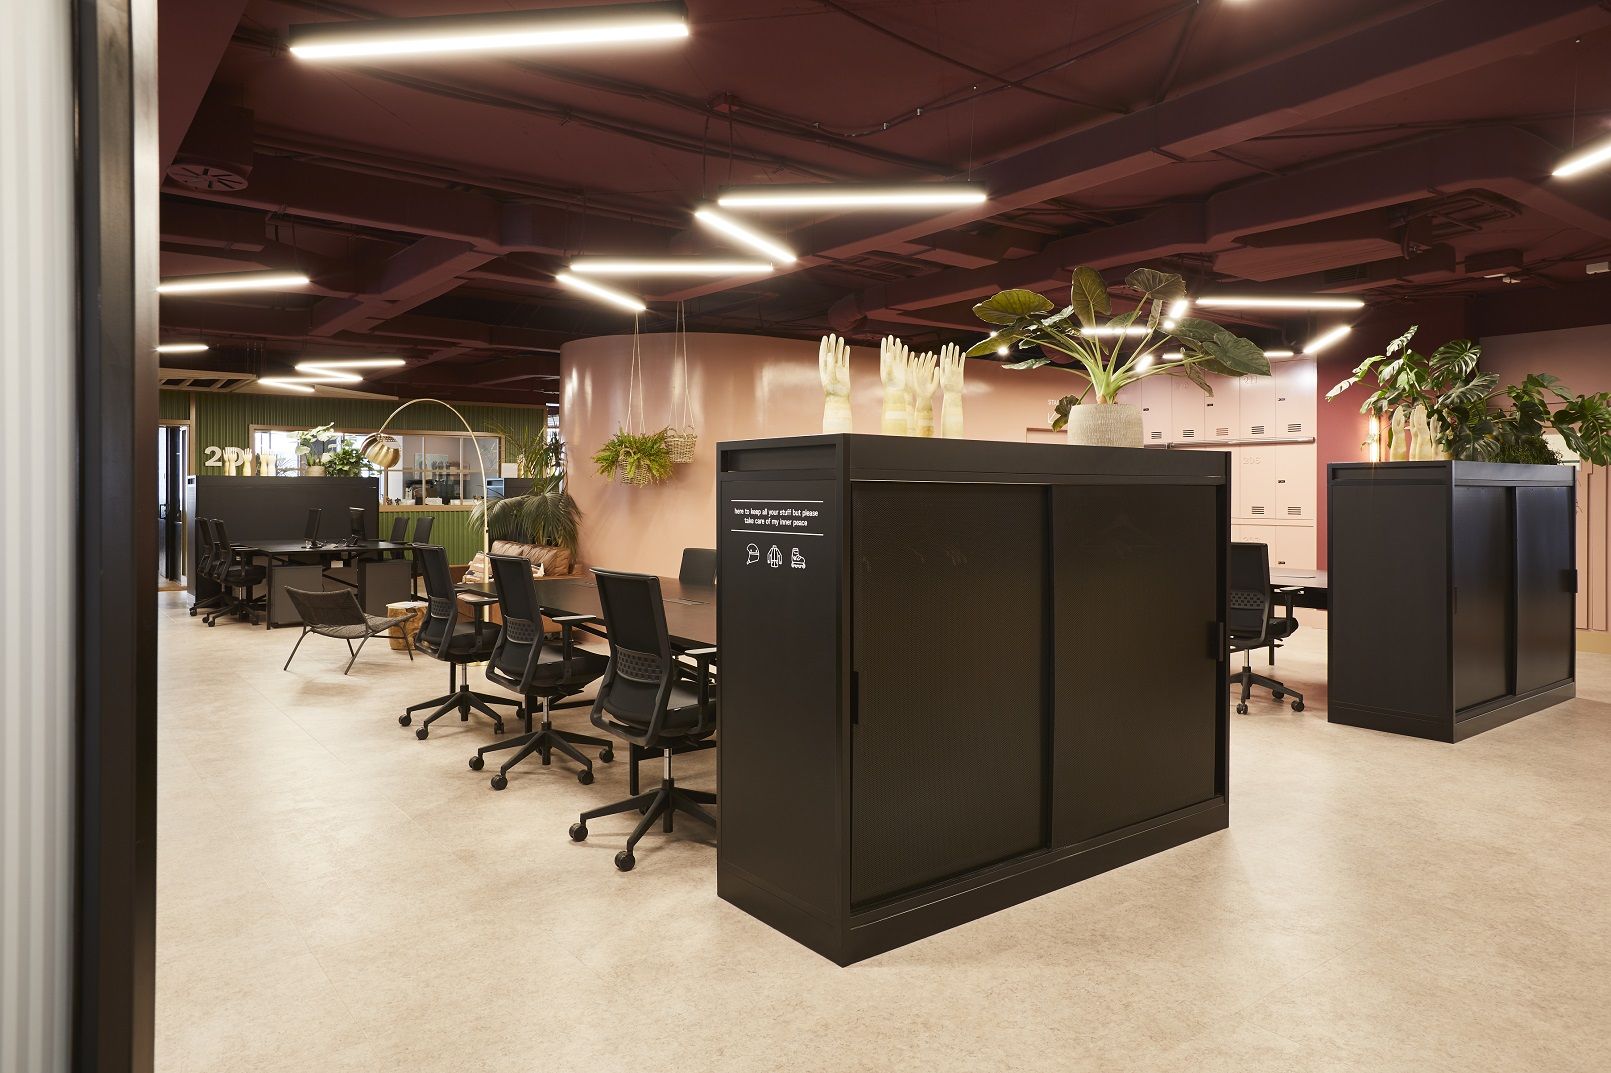 El coworking resurge en España en forma de espacios flexibles alternativos a la oficina y el home office